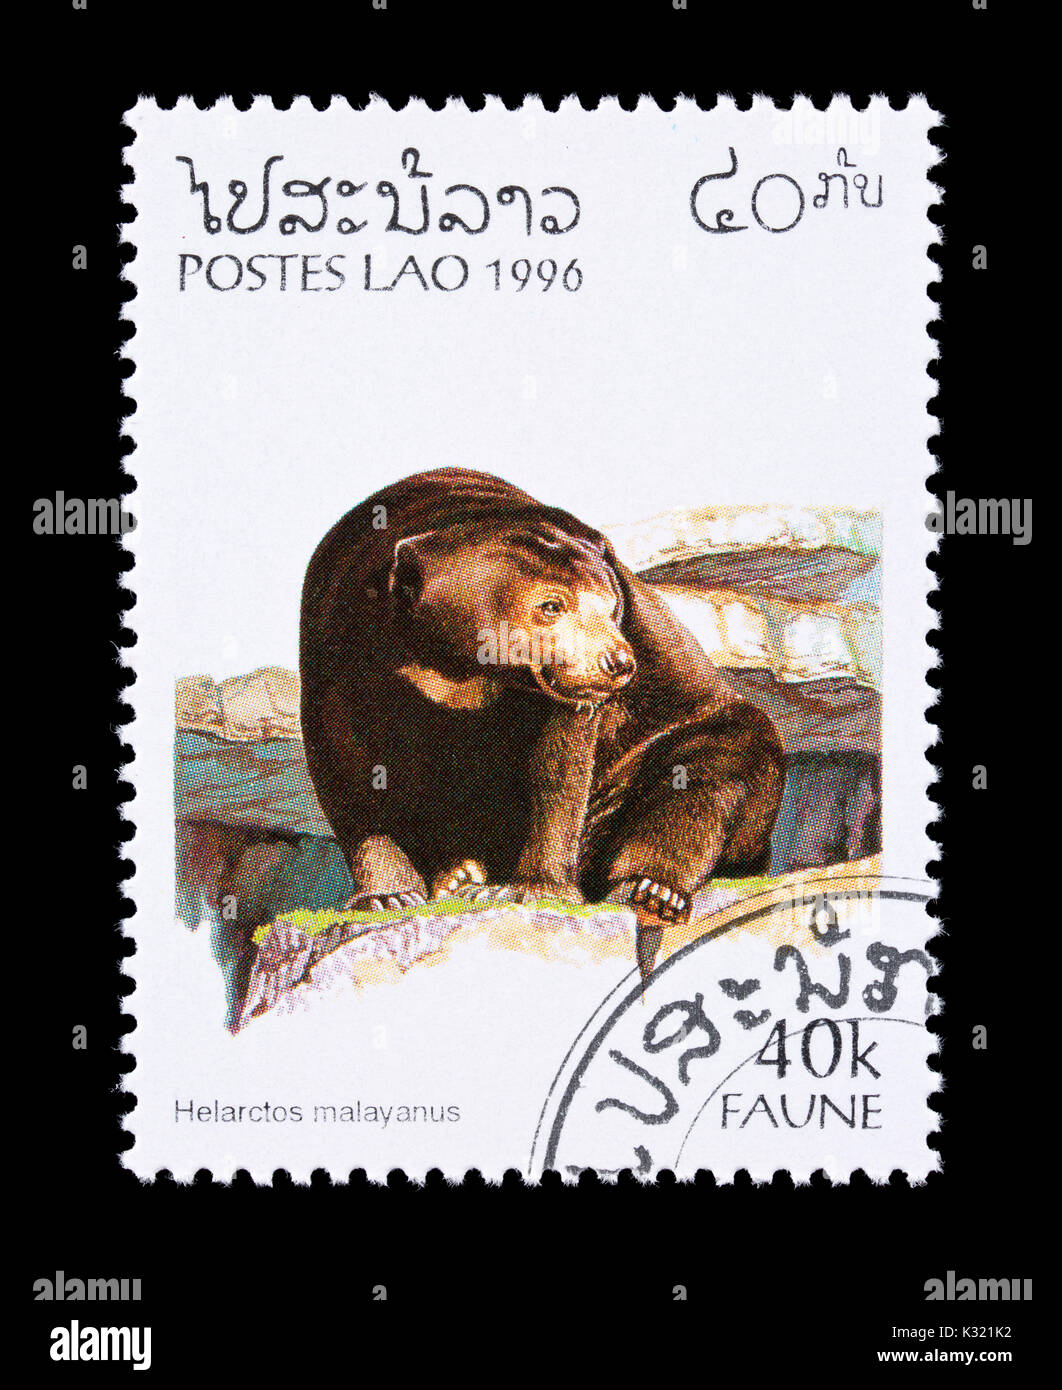 Postage stamp from Laos depicting a sun bear (Helarctos malayanus) Stock Photo